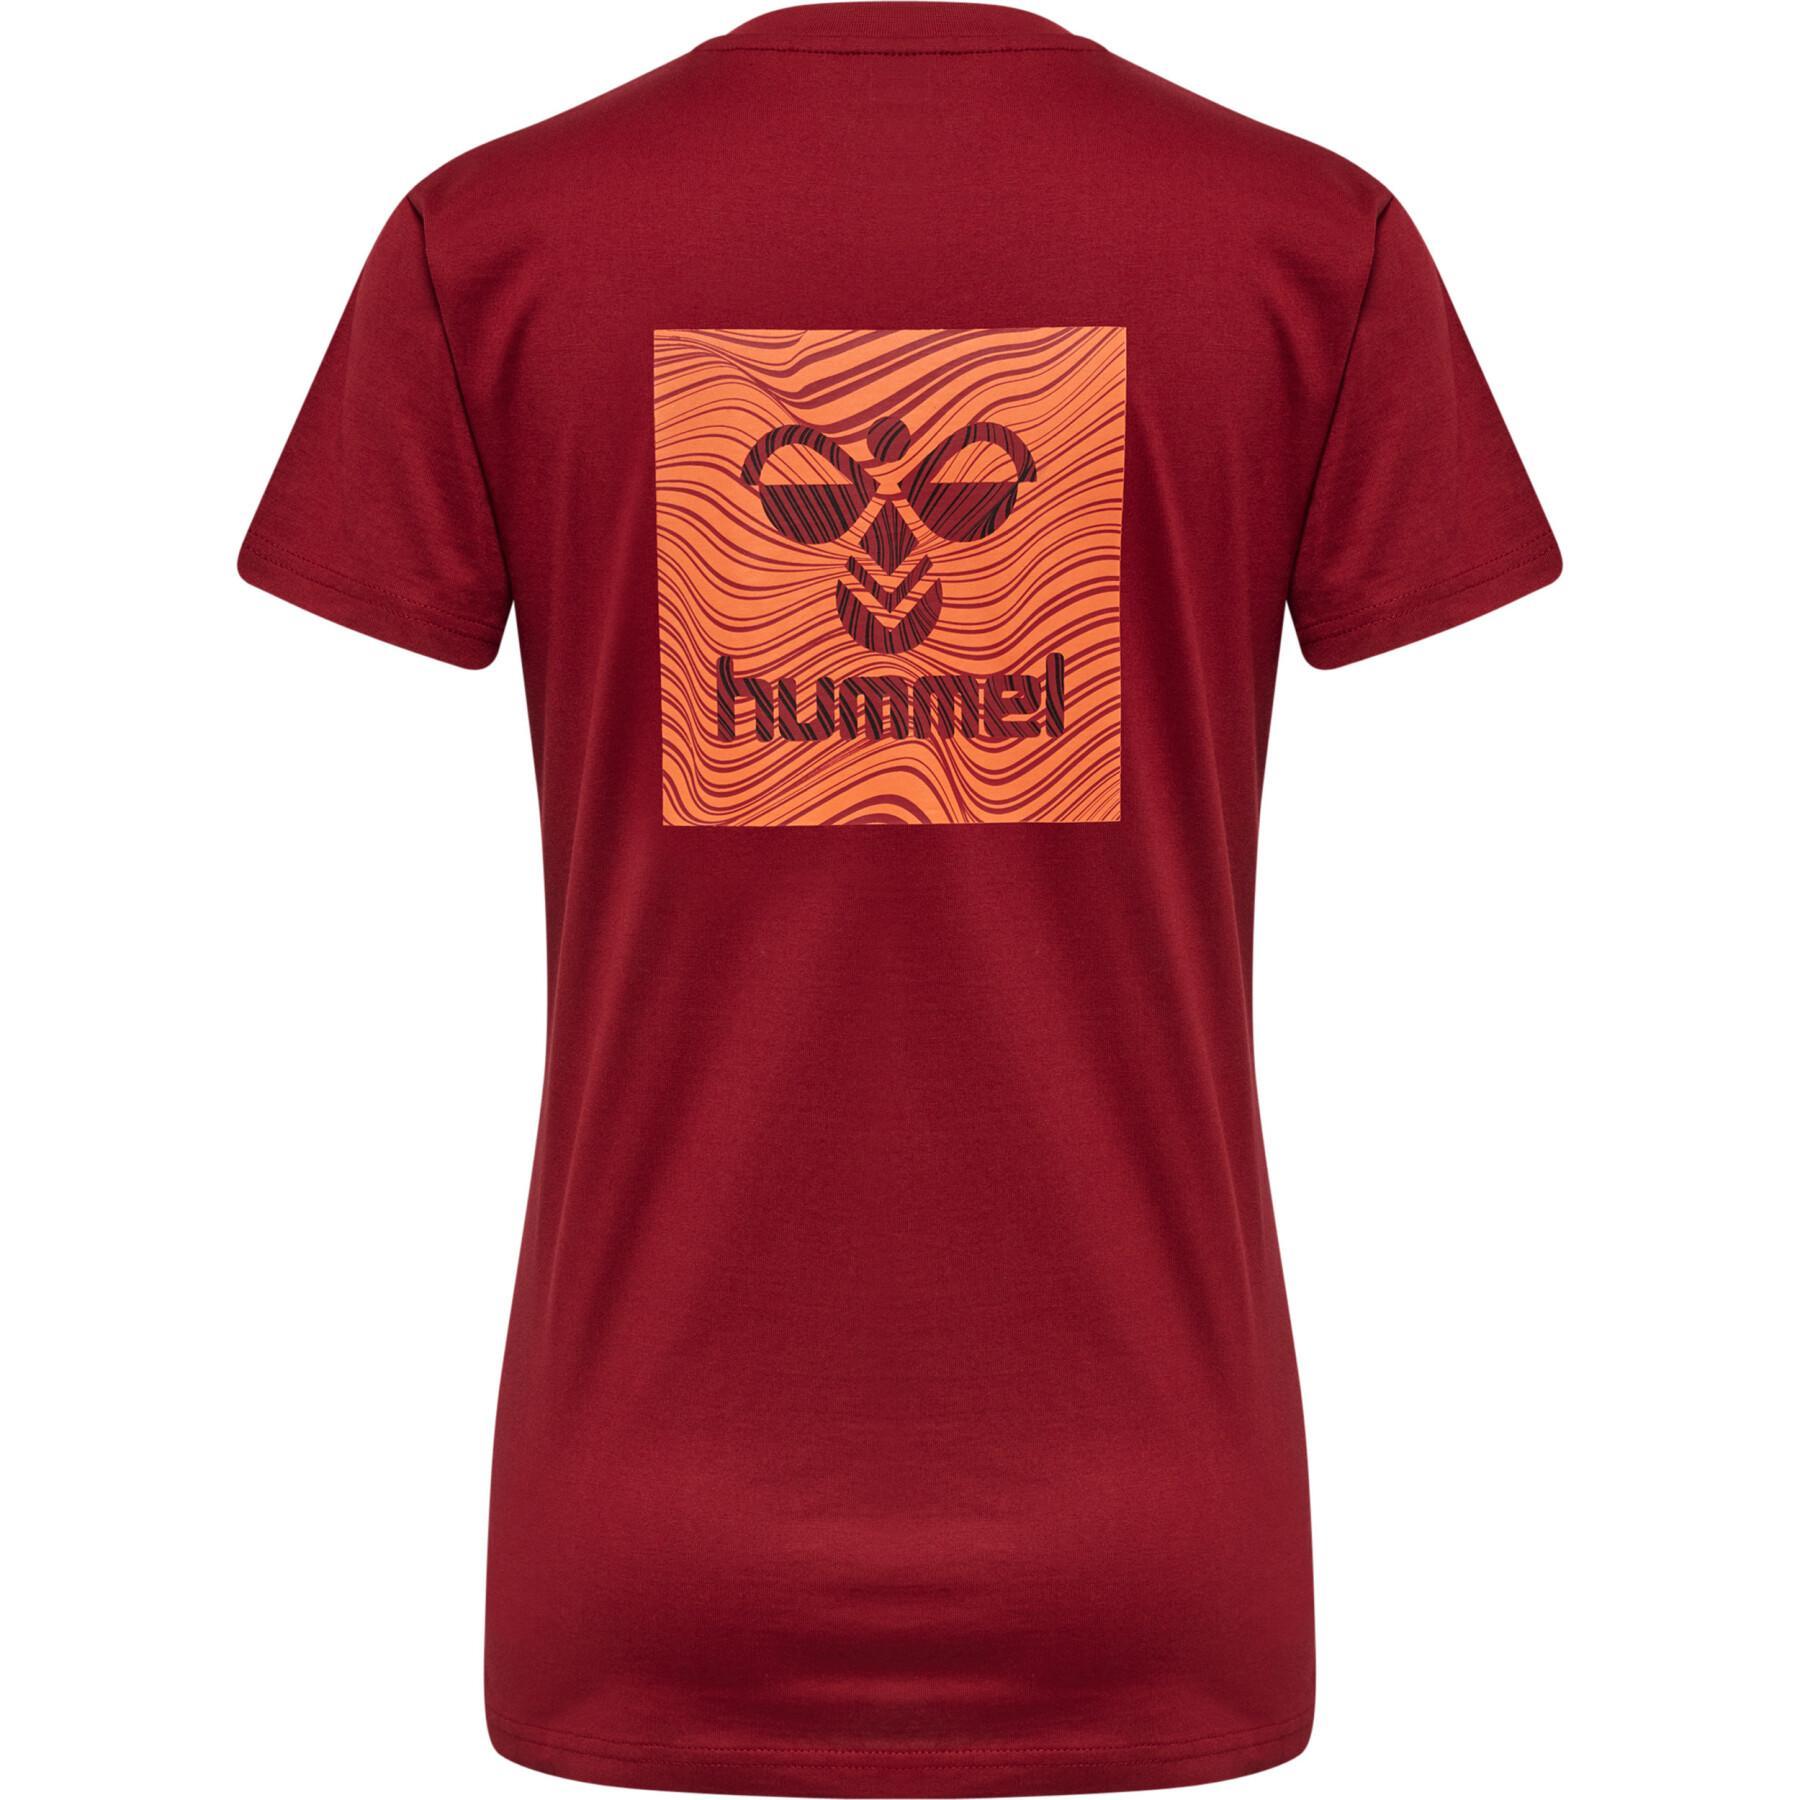 T-shirt femme Hummel hmlOFFGrid